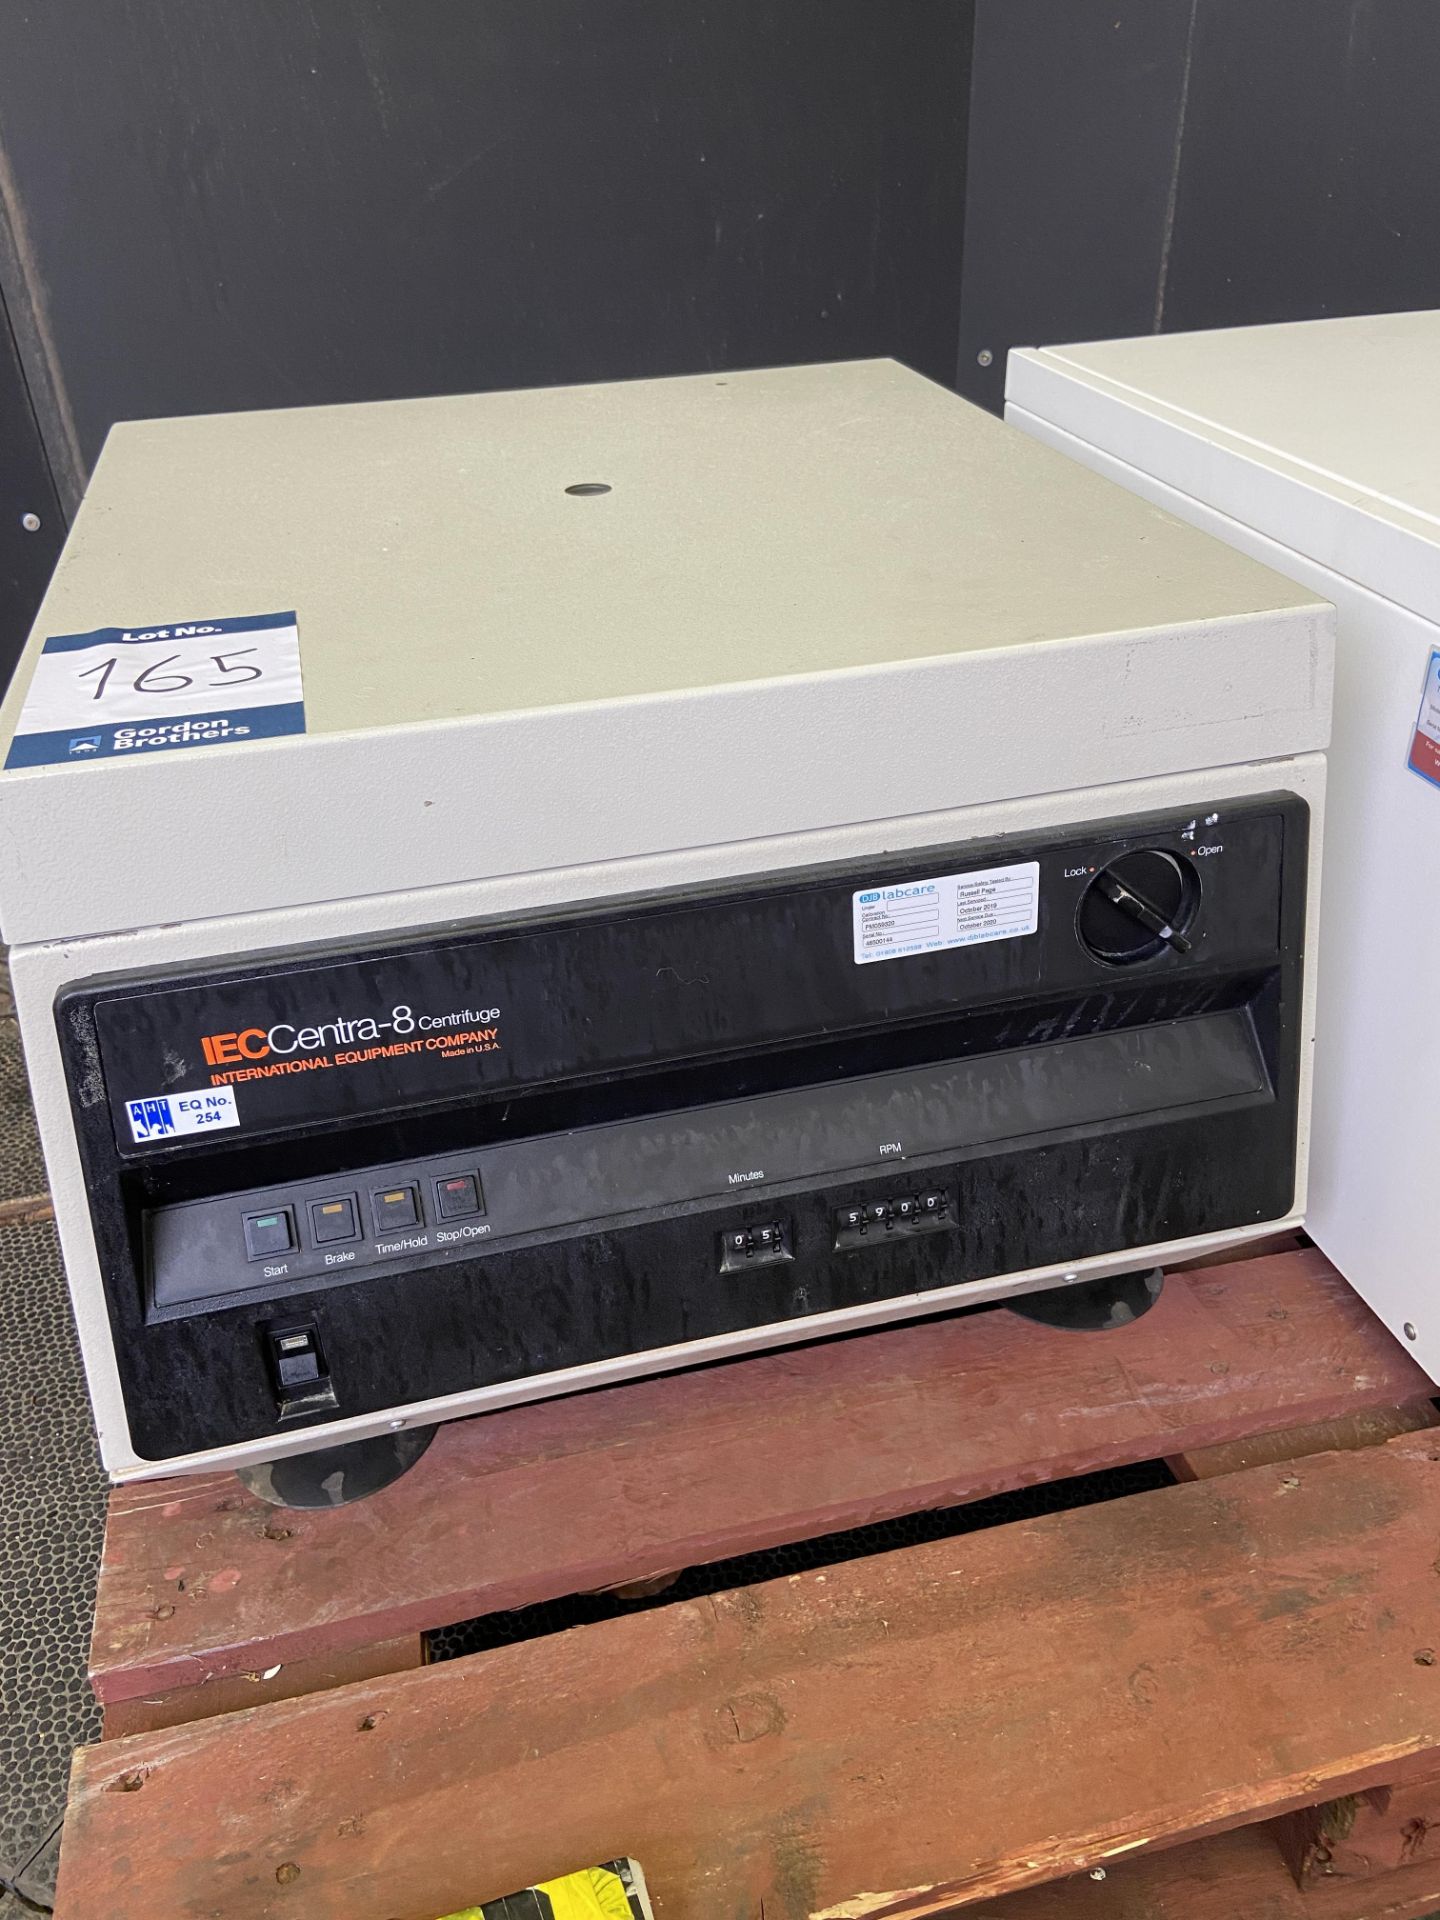 IEC Centra-8 benchtop centrifuge, Serial No. 46500144